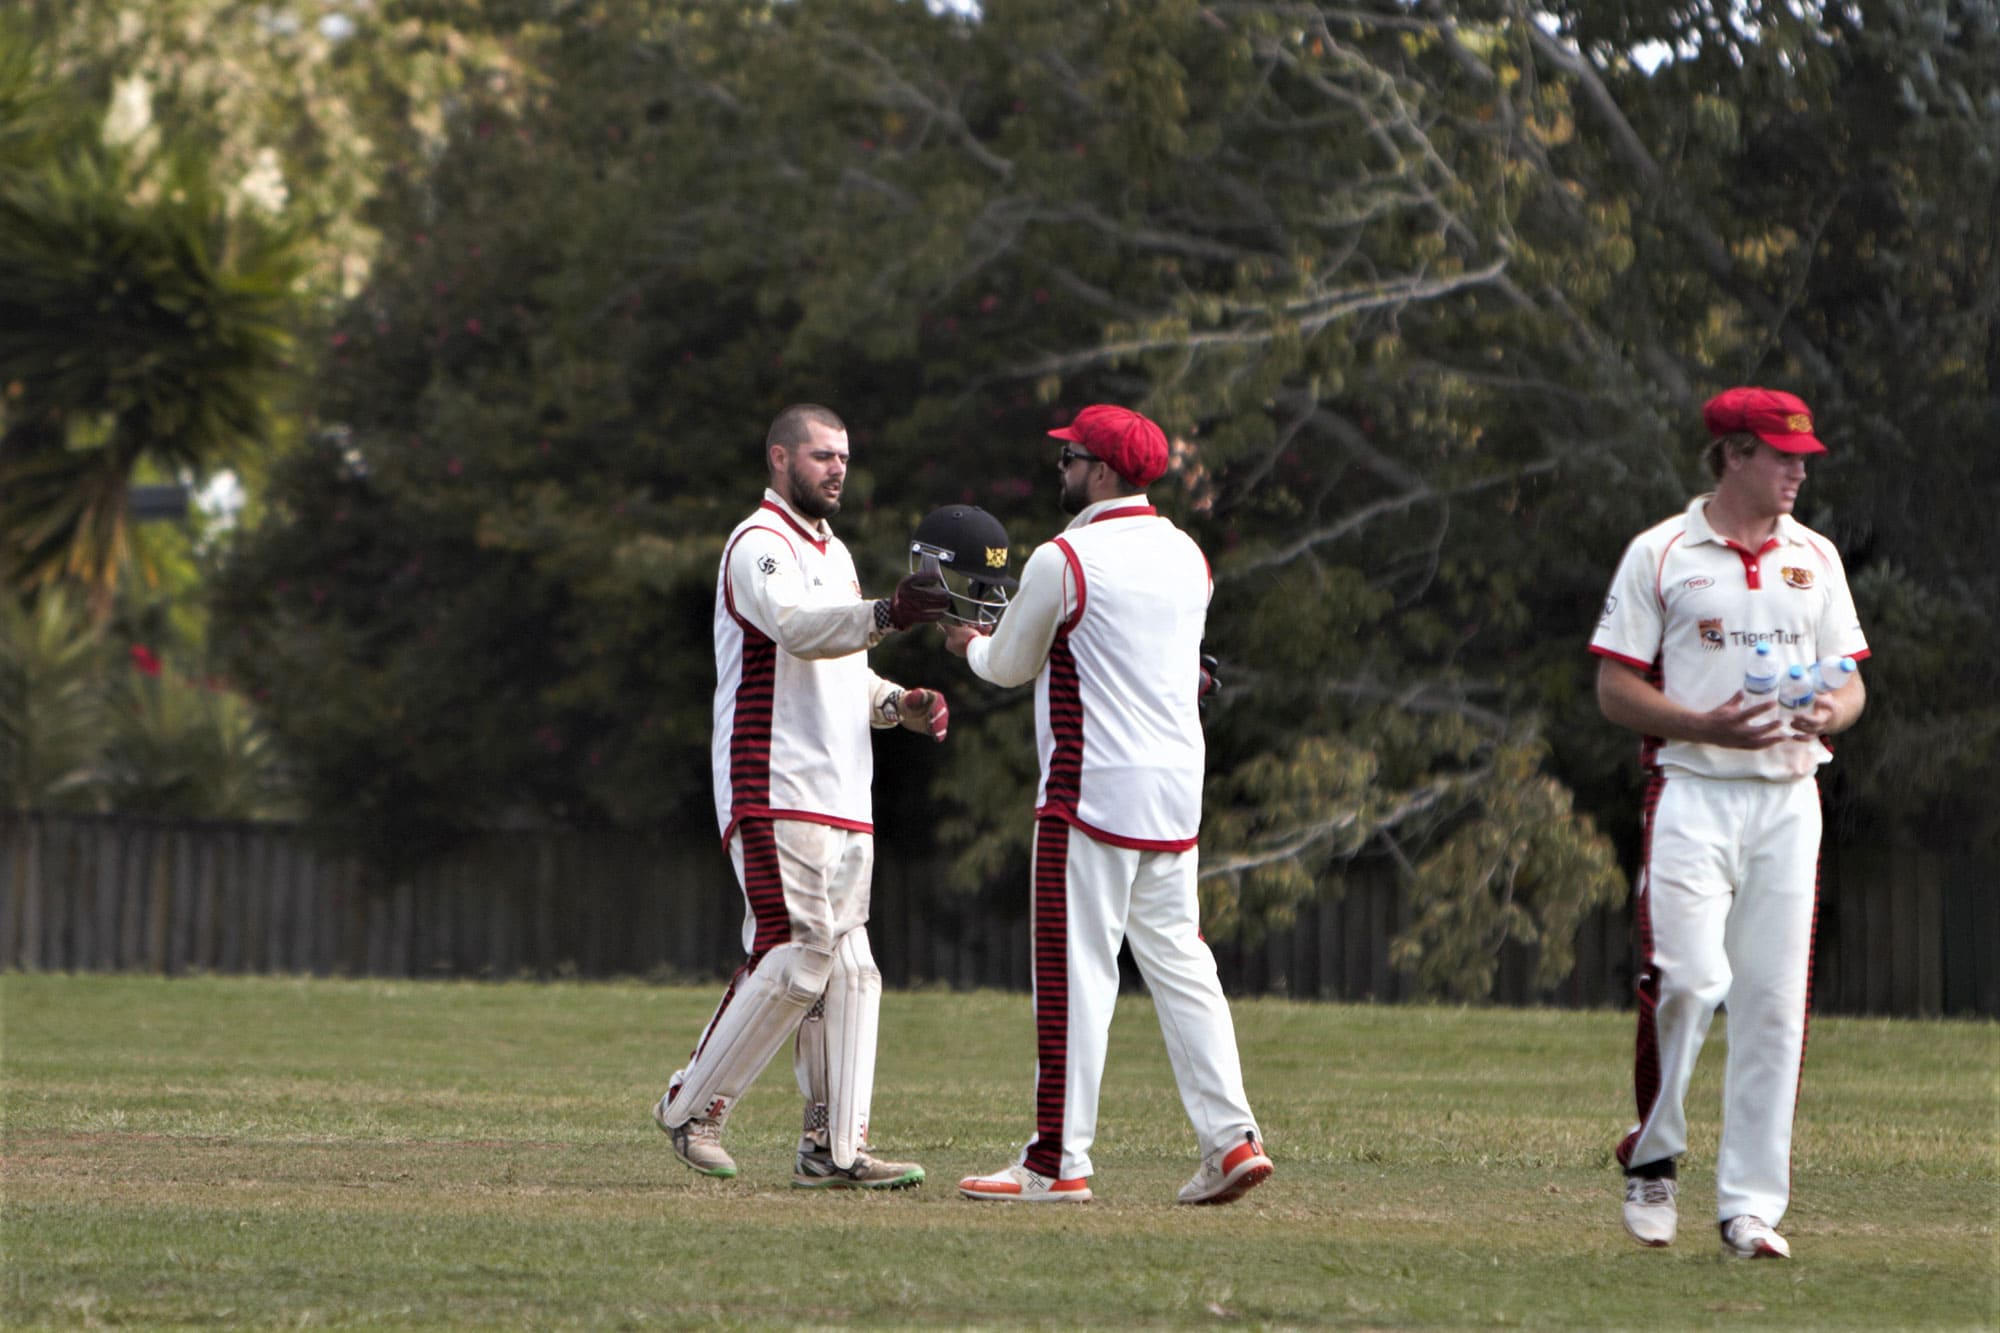 hamilton old boys cricket club Waikato New Zealand Team Gallery Photos 9